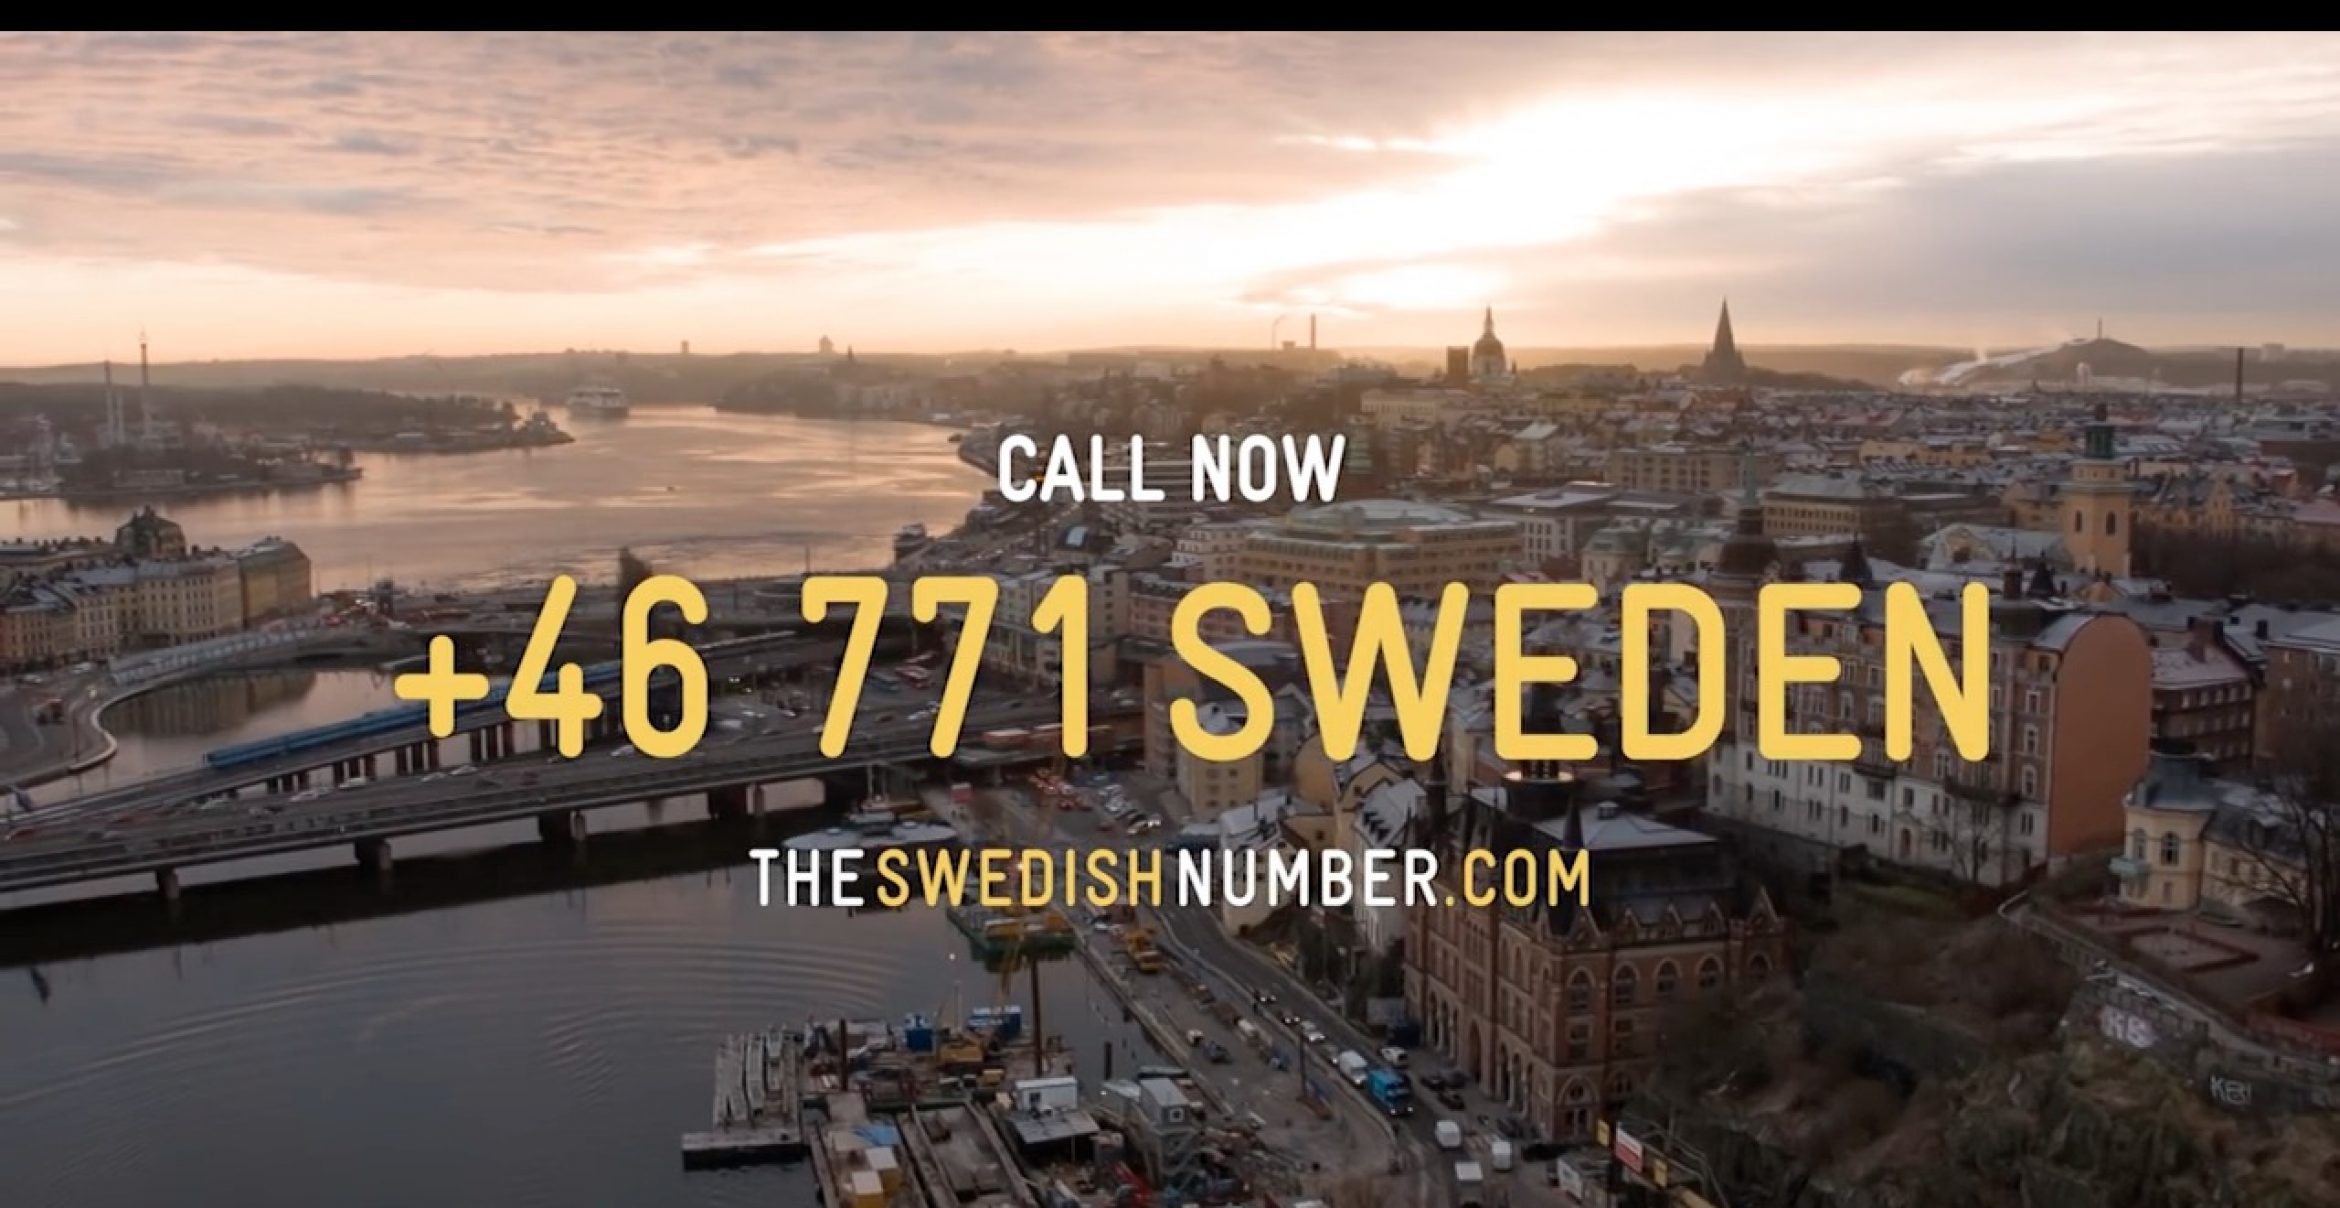 Unter dieser Nummer könnt ihr wahllos irgendwelche Schweden anrufen